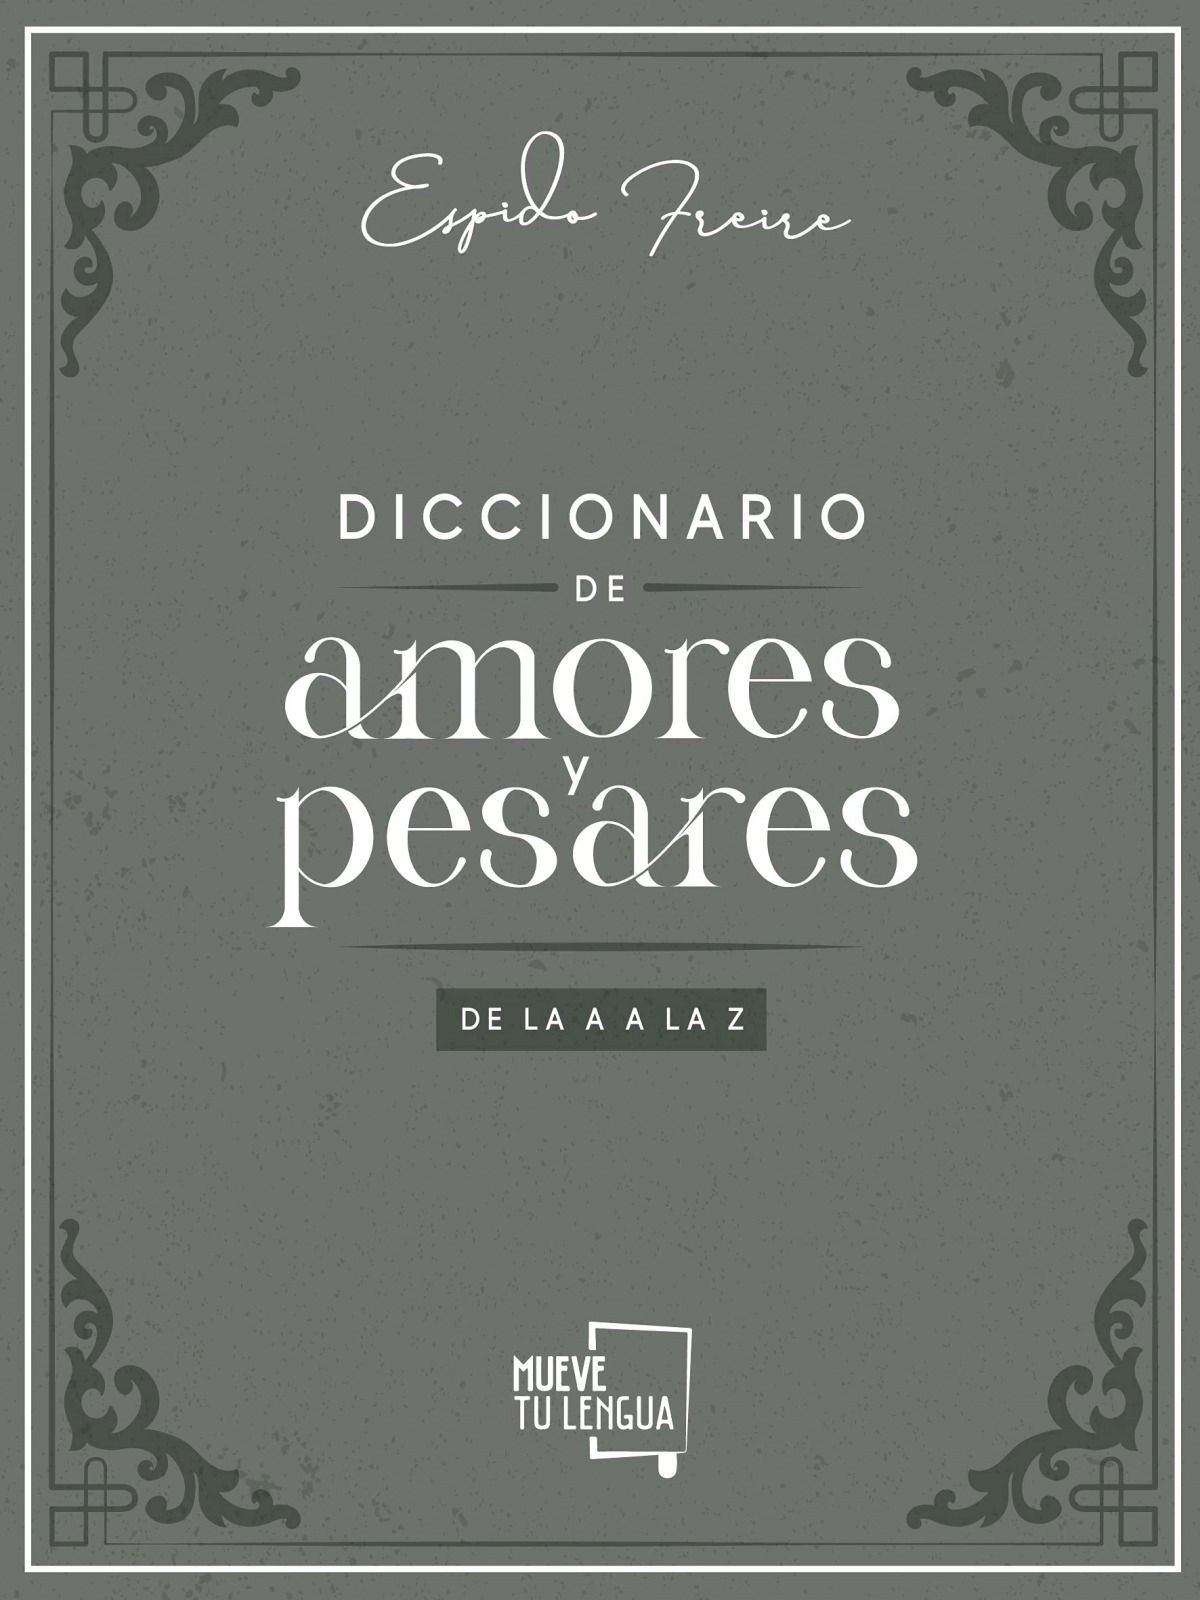 Diccionario de amores y pesares (Espido Freire, 2021)